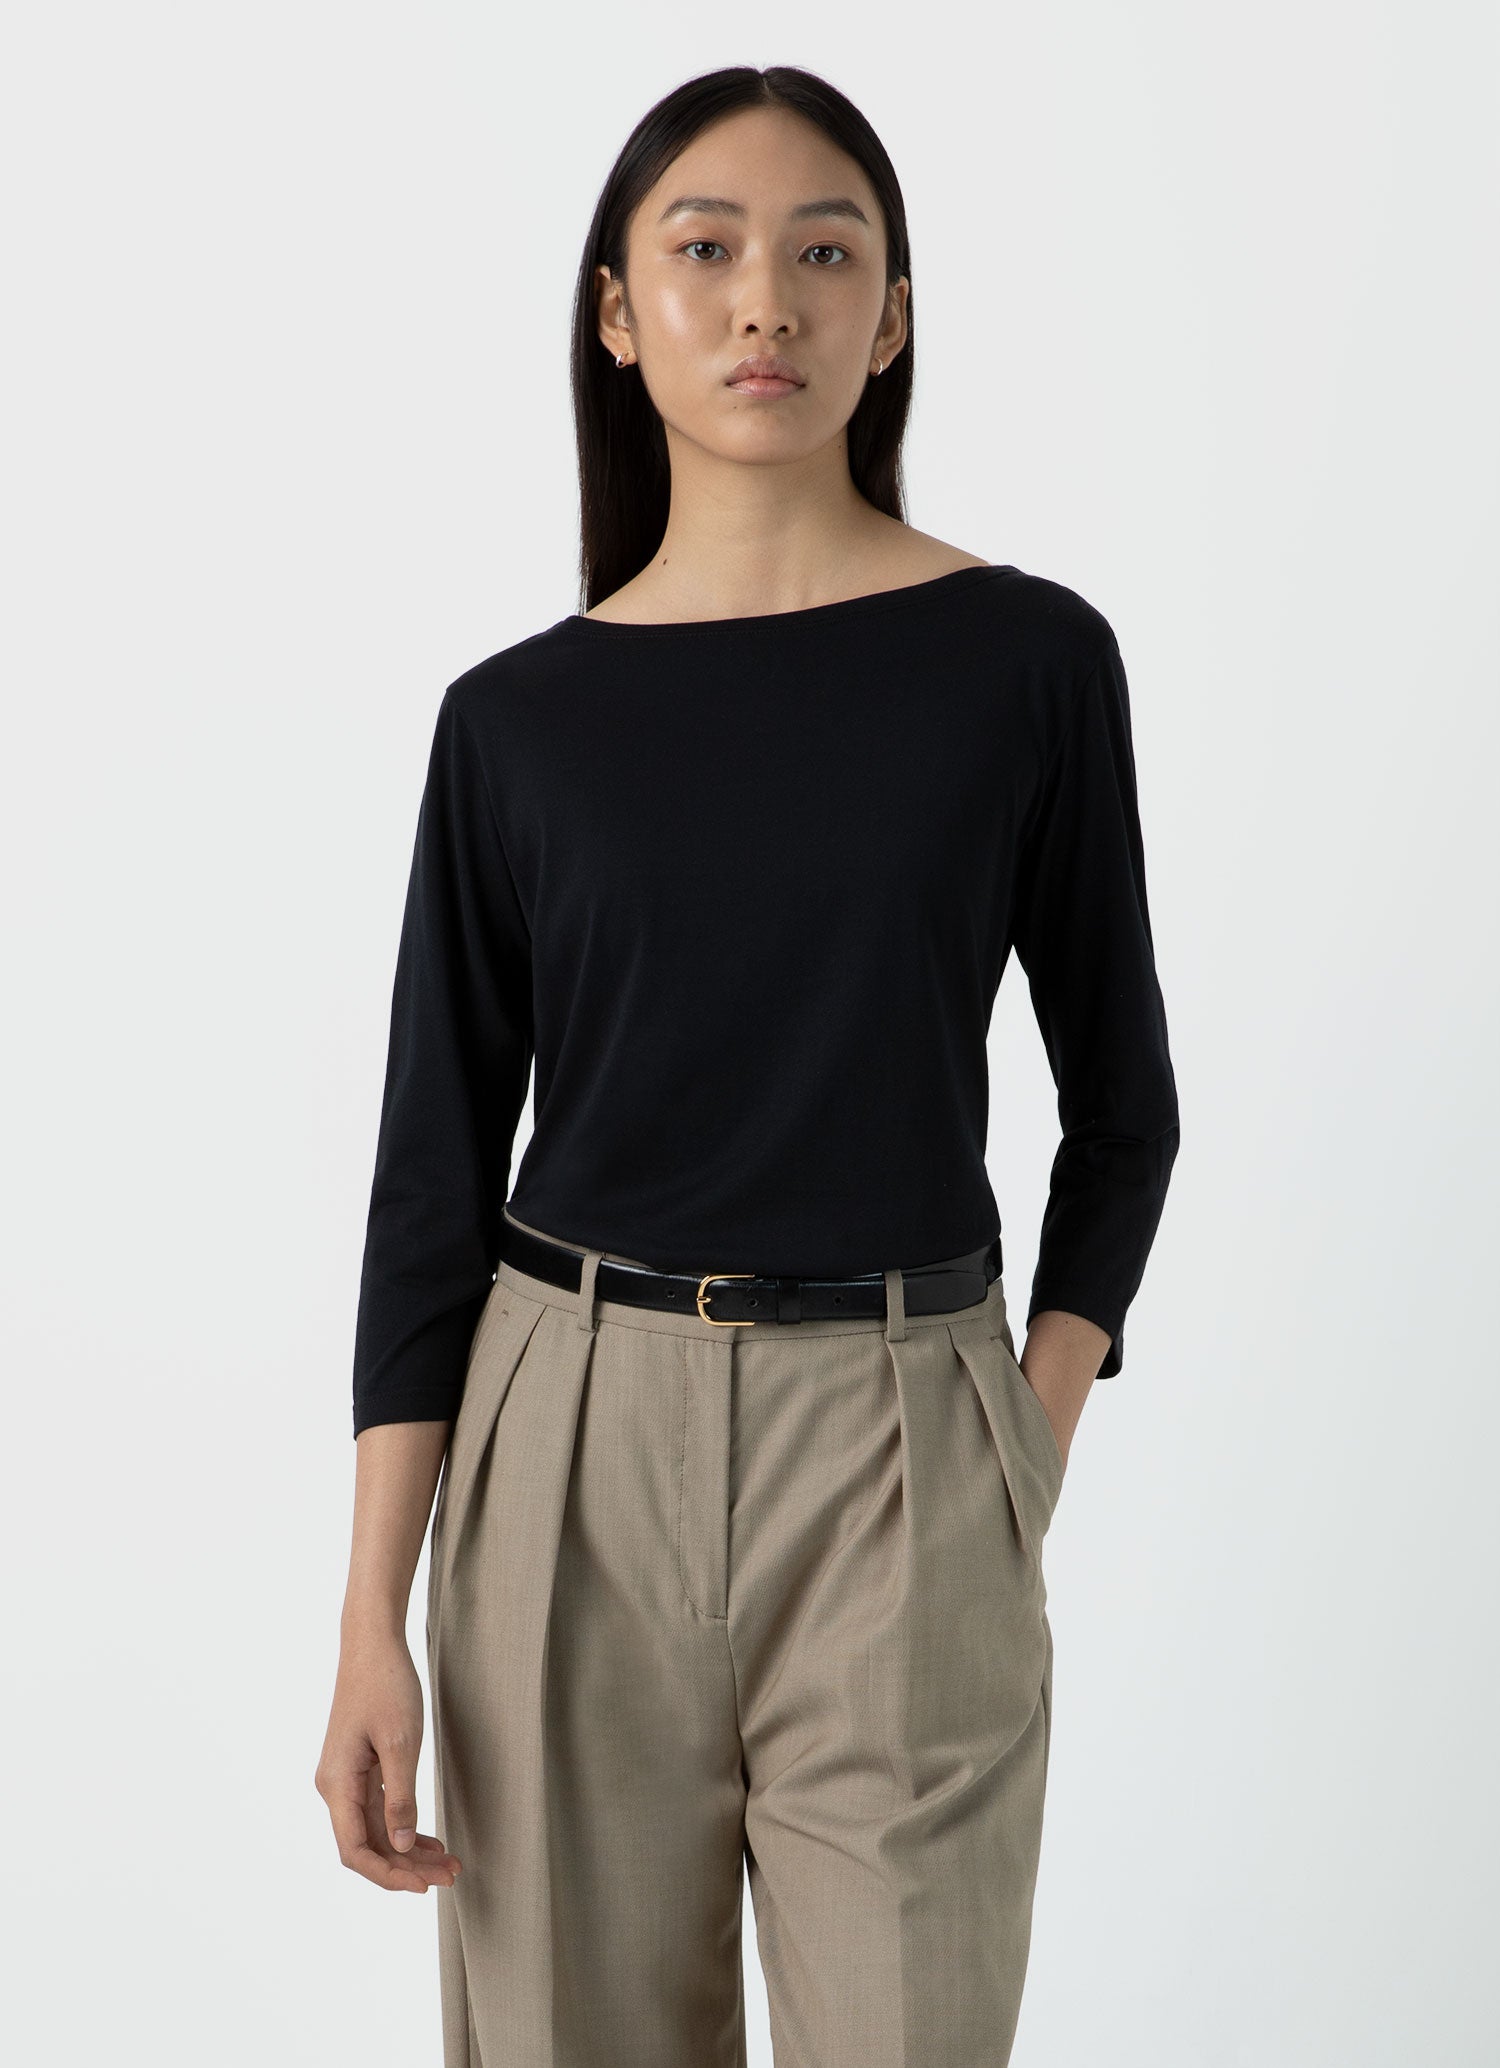 Women's 3/4 Sleeve Boat Neck T-shirt in Black | Sunspel